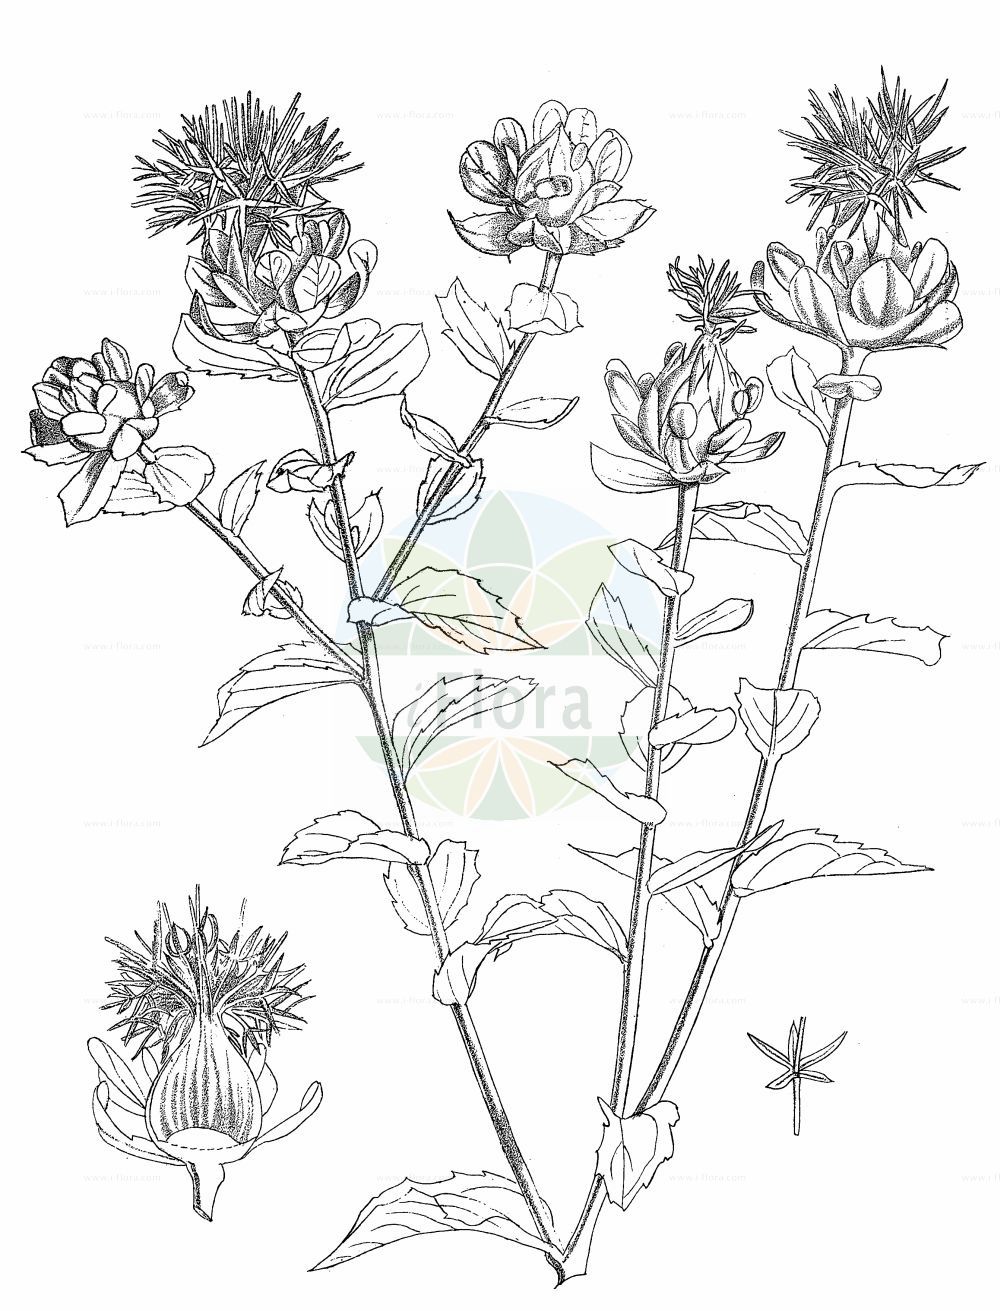 Historische Abbildung von Carthamus tinctorius (Safflower). Das Bild zeigt Blatt, Bluete, Frucht und Same. ---- Historical Drawing of Carthamus tinctorius (Safflower). The image is showing leaf, flower, fruit and seed.(Carthamus tinctorius,Safflower,Carthamus tinctorius,Carthamus,Asteraceae,Korbblütengewächse,Daisy family,Blatt,Bluete,Frucht,Same,leaf,flower,fruit,seed,Kirtikar & Basu (1918))